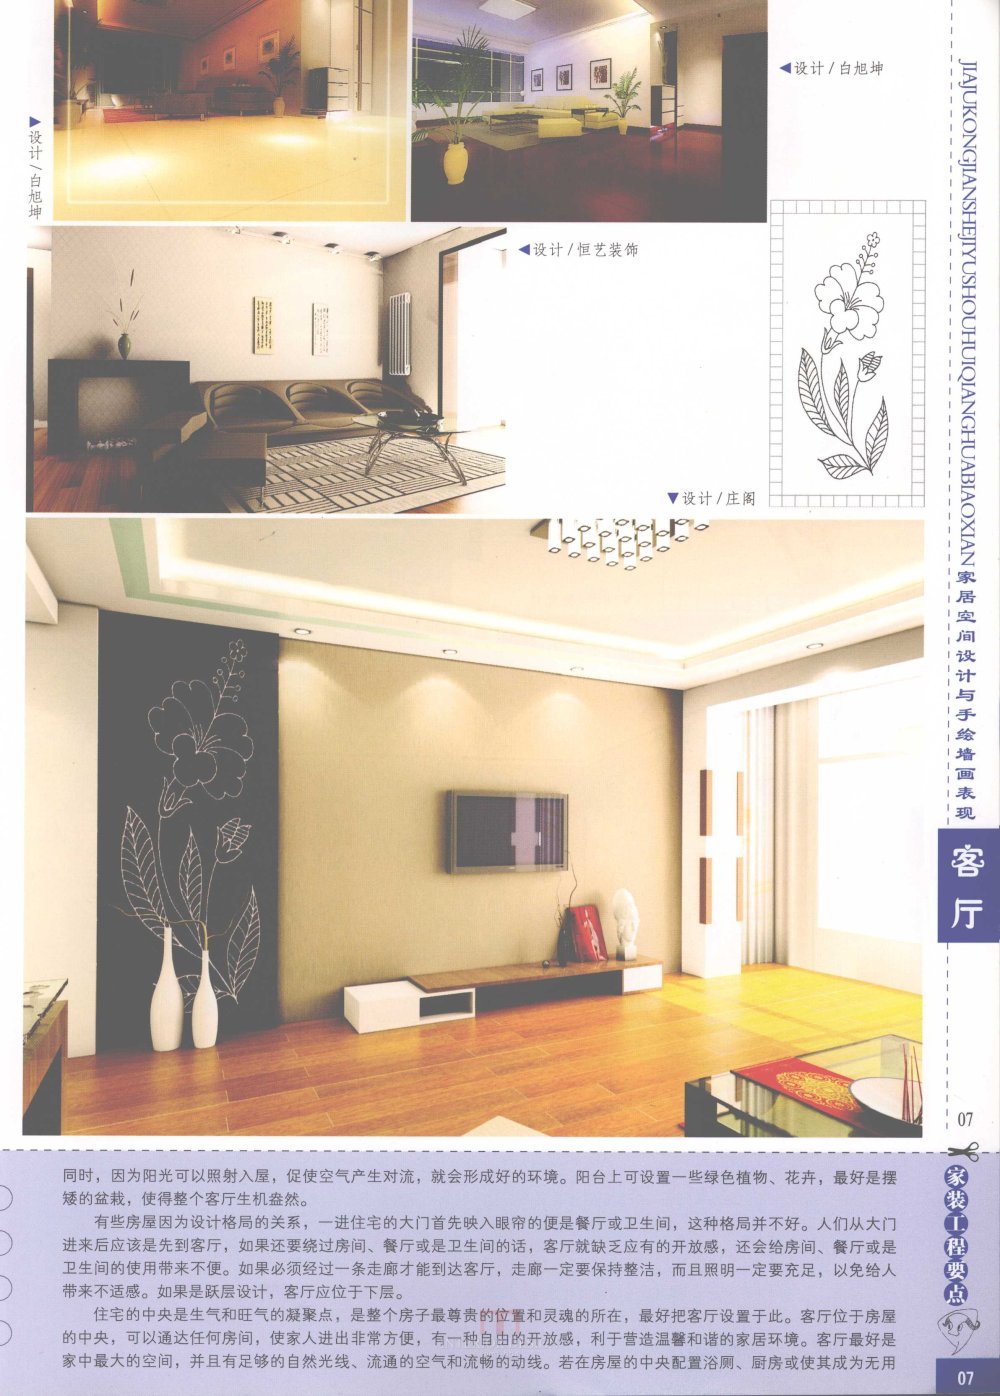 家居空间设计与手绘墙画表现客厅_家居空间设计与手绘墙画表现客厅-09.jpg